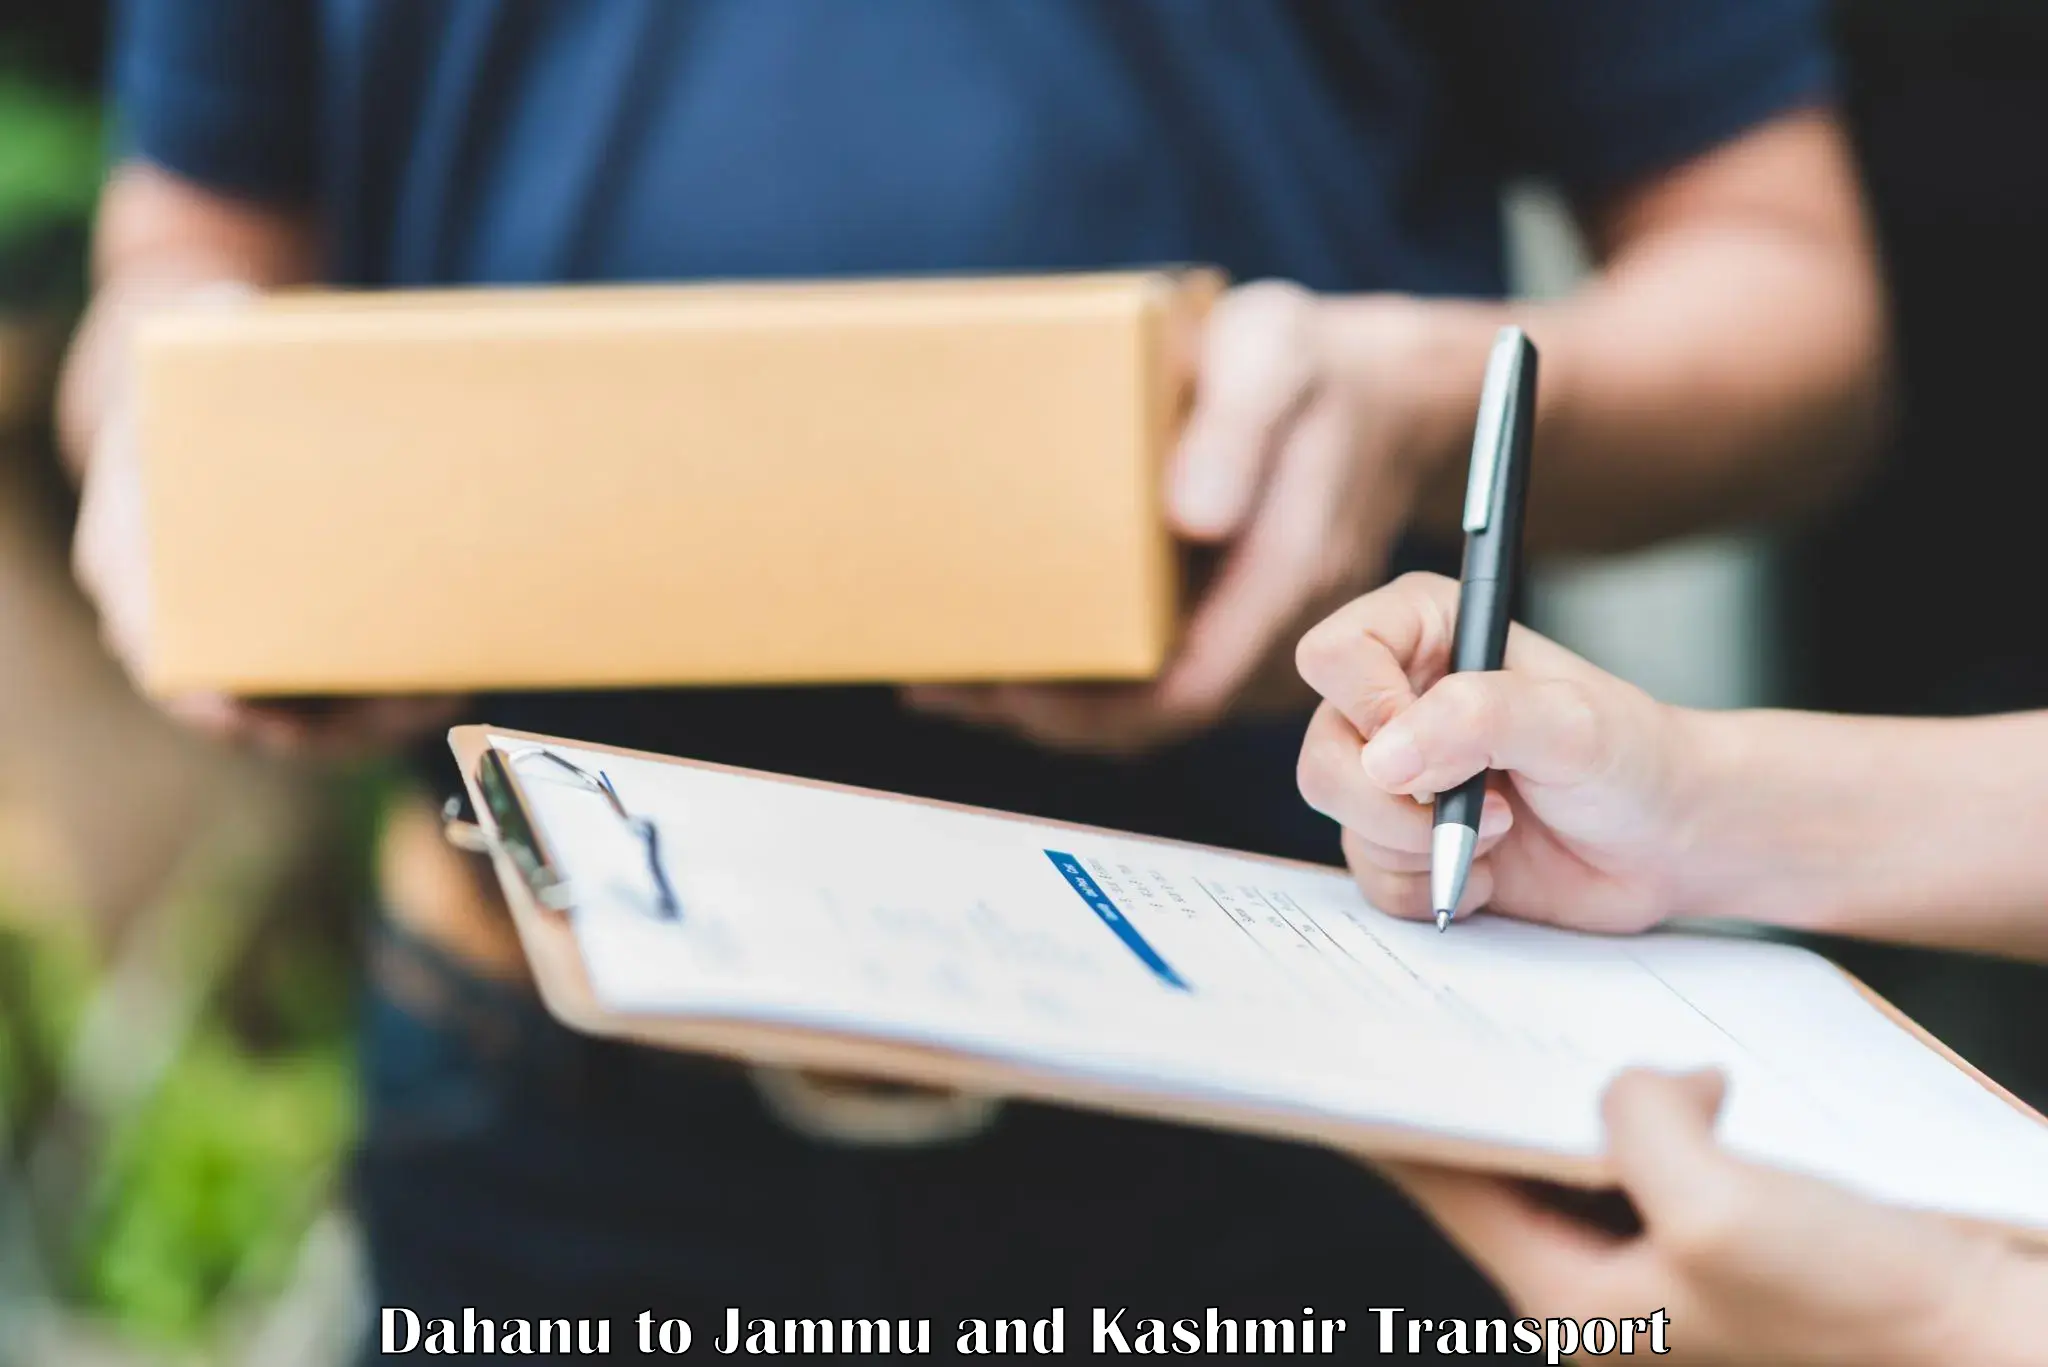 Transport services Dahanu to Jammu and Kashmir